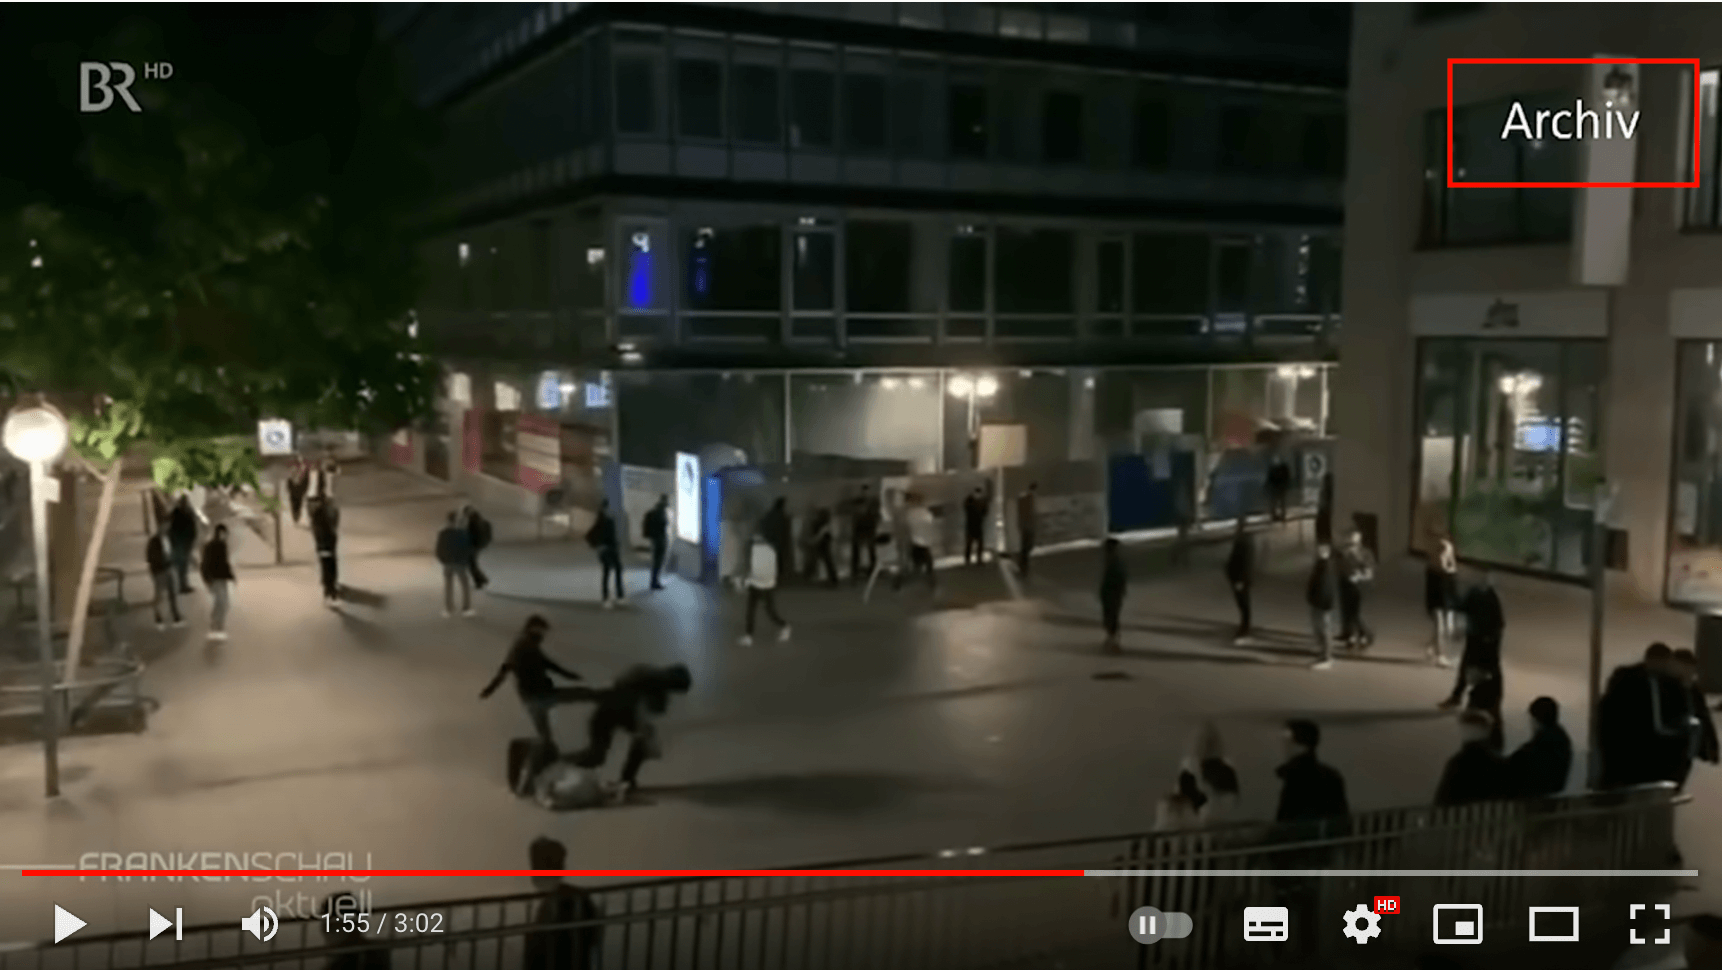 Aufnahme eines Angriffs auf einen Polizisten in Stuttgart, der sich im Juni 2020 ereignete. Im Beitrag des BR ist die Szene als Archivmaterial gekennzeichnet.